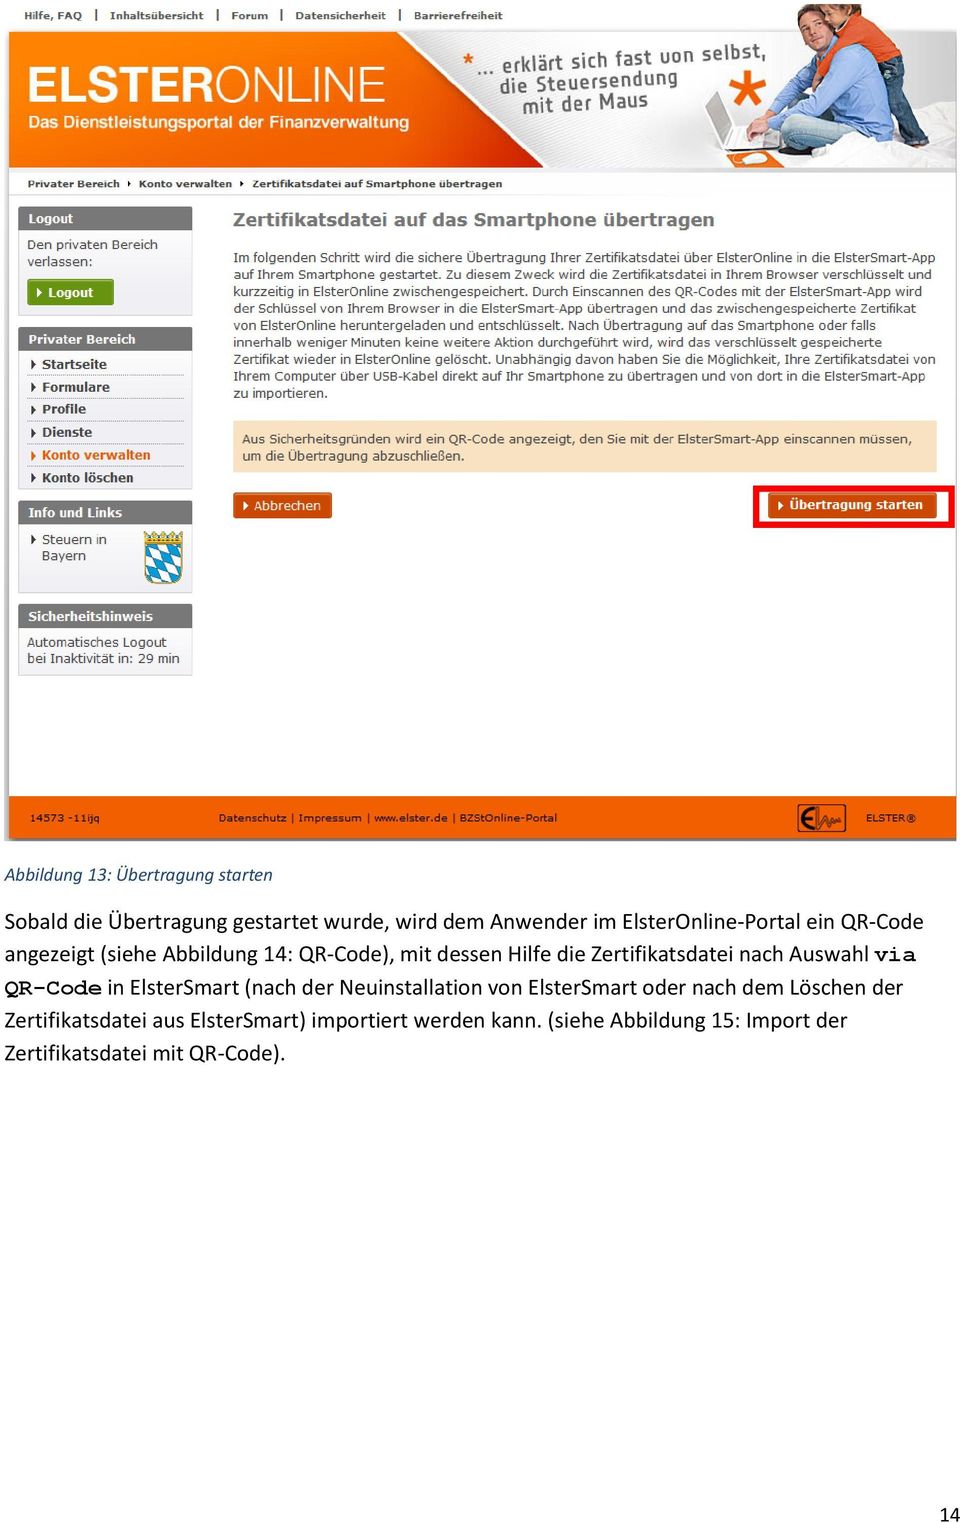 Zertifikatsdatei nach Auswahl via QR-Code in ElsterSmart (nach der Neuinstallation von ElsterSmart oder nach